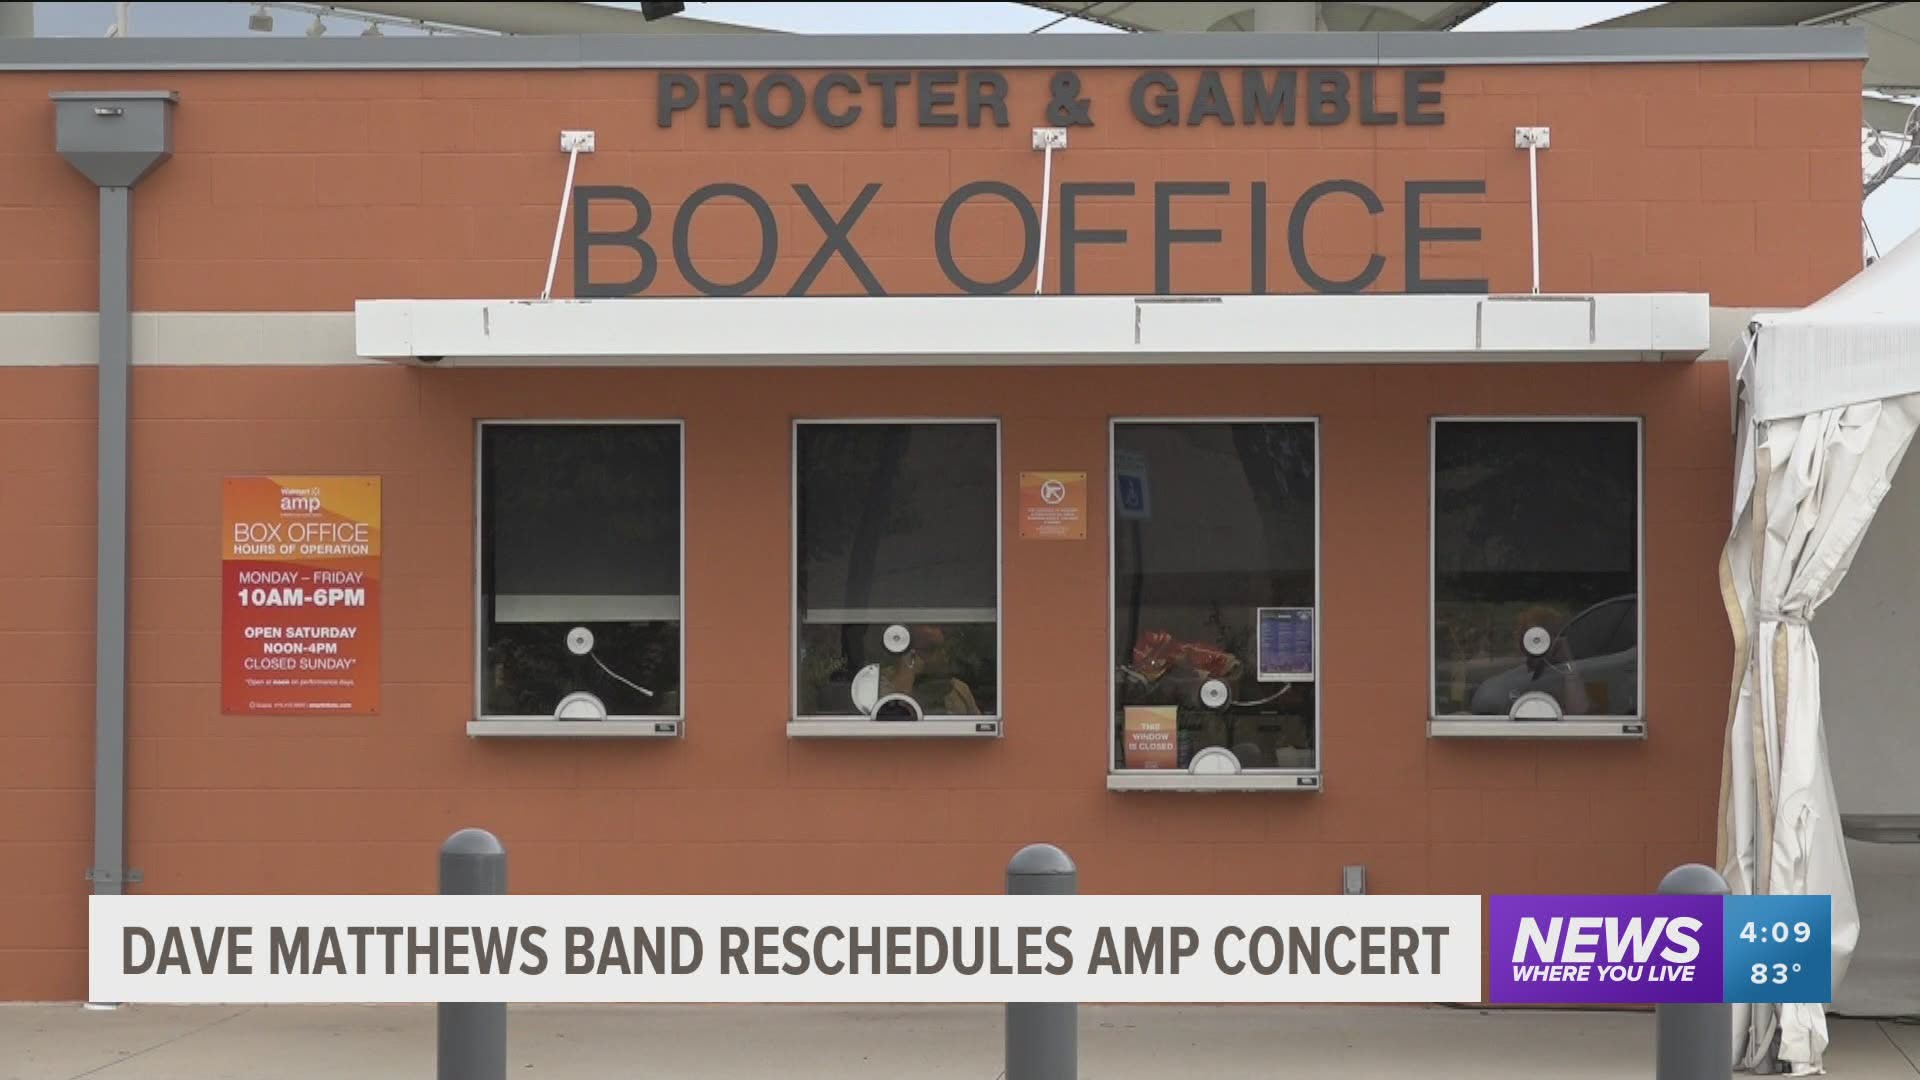 Dave Matthews Band reschedules AMP concert